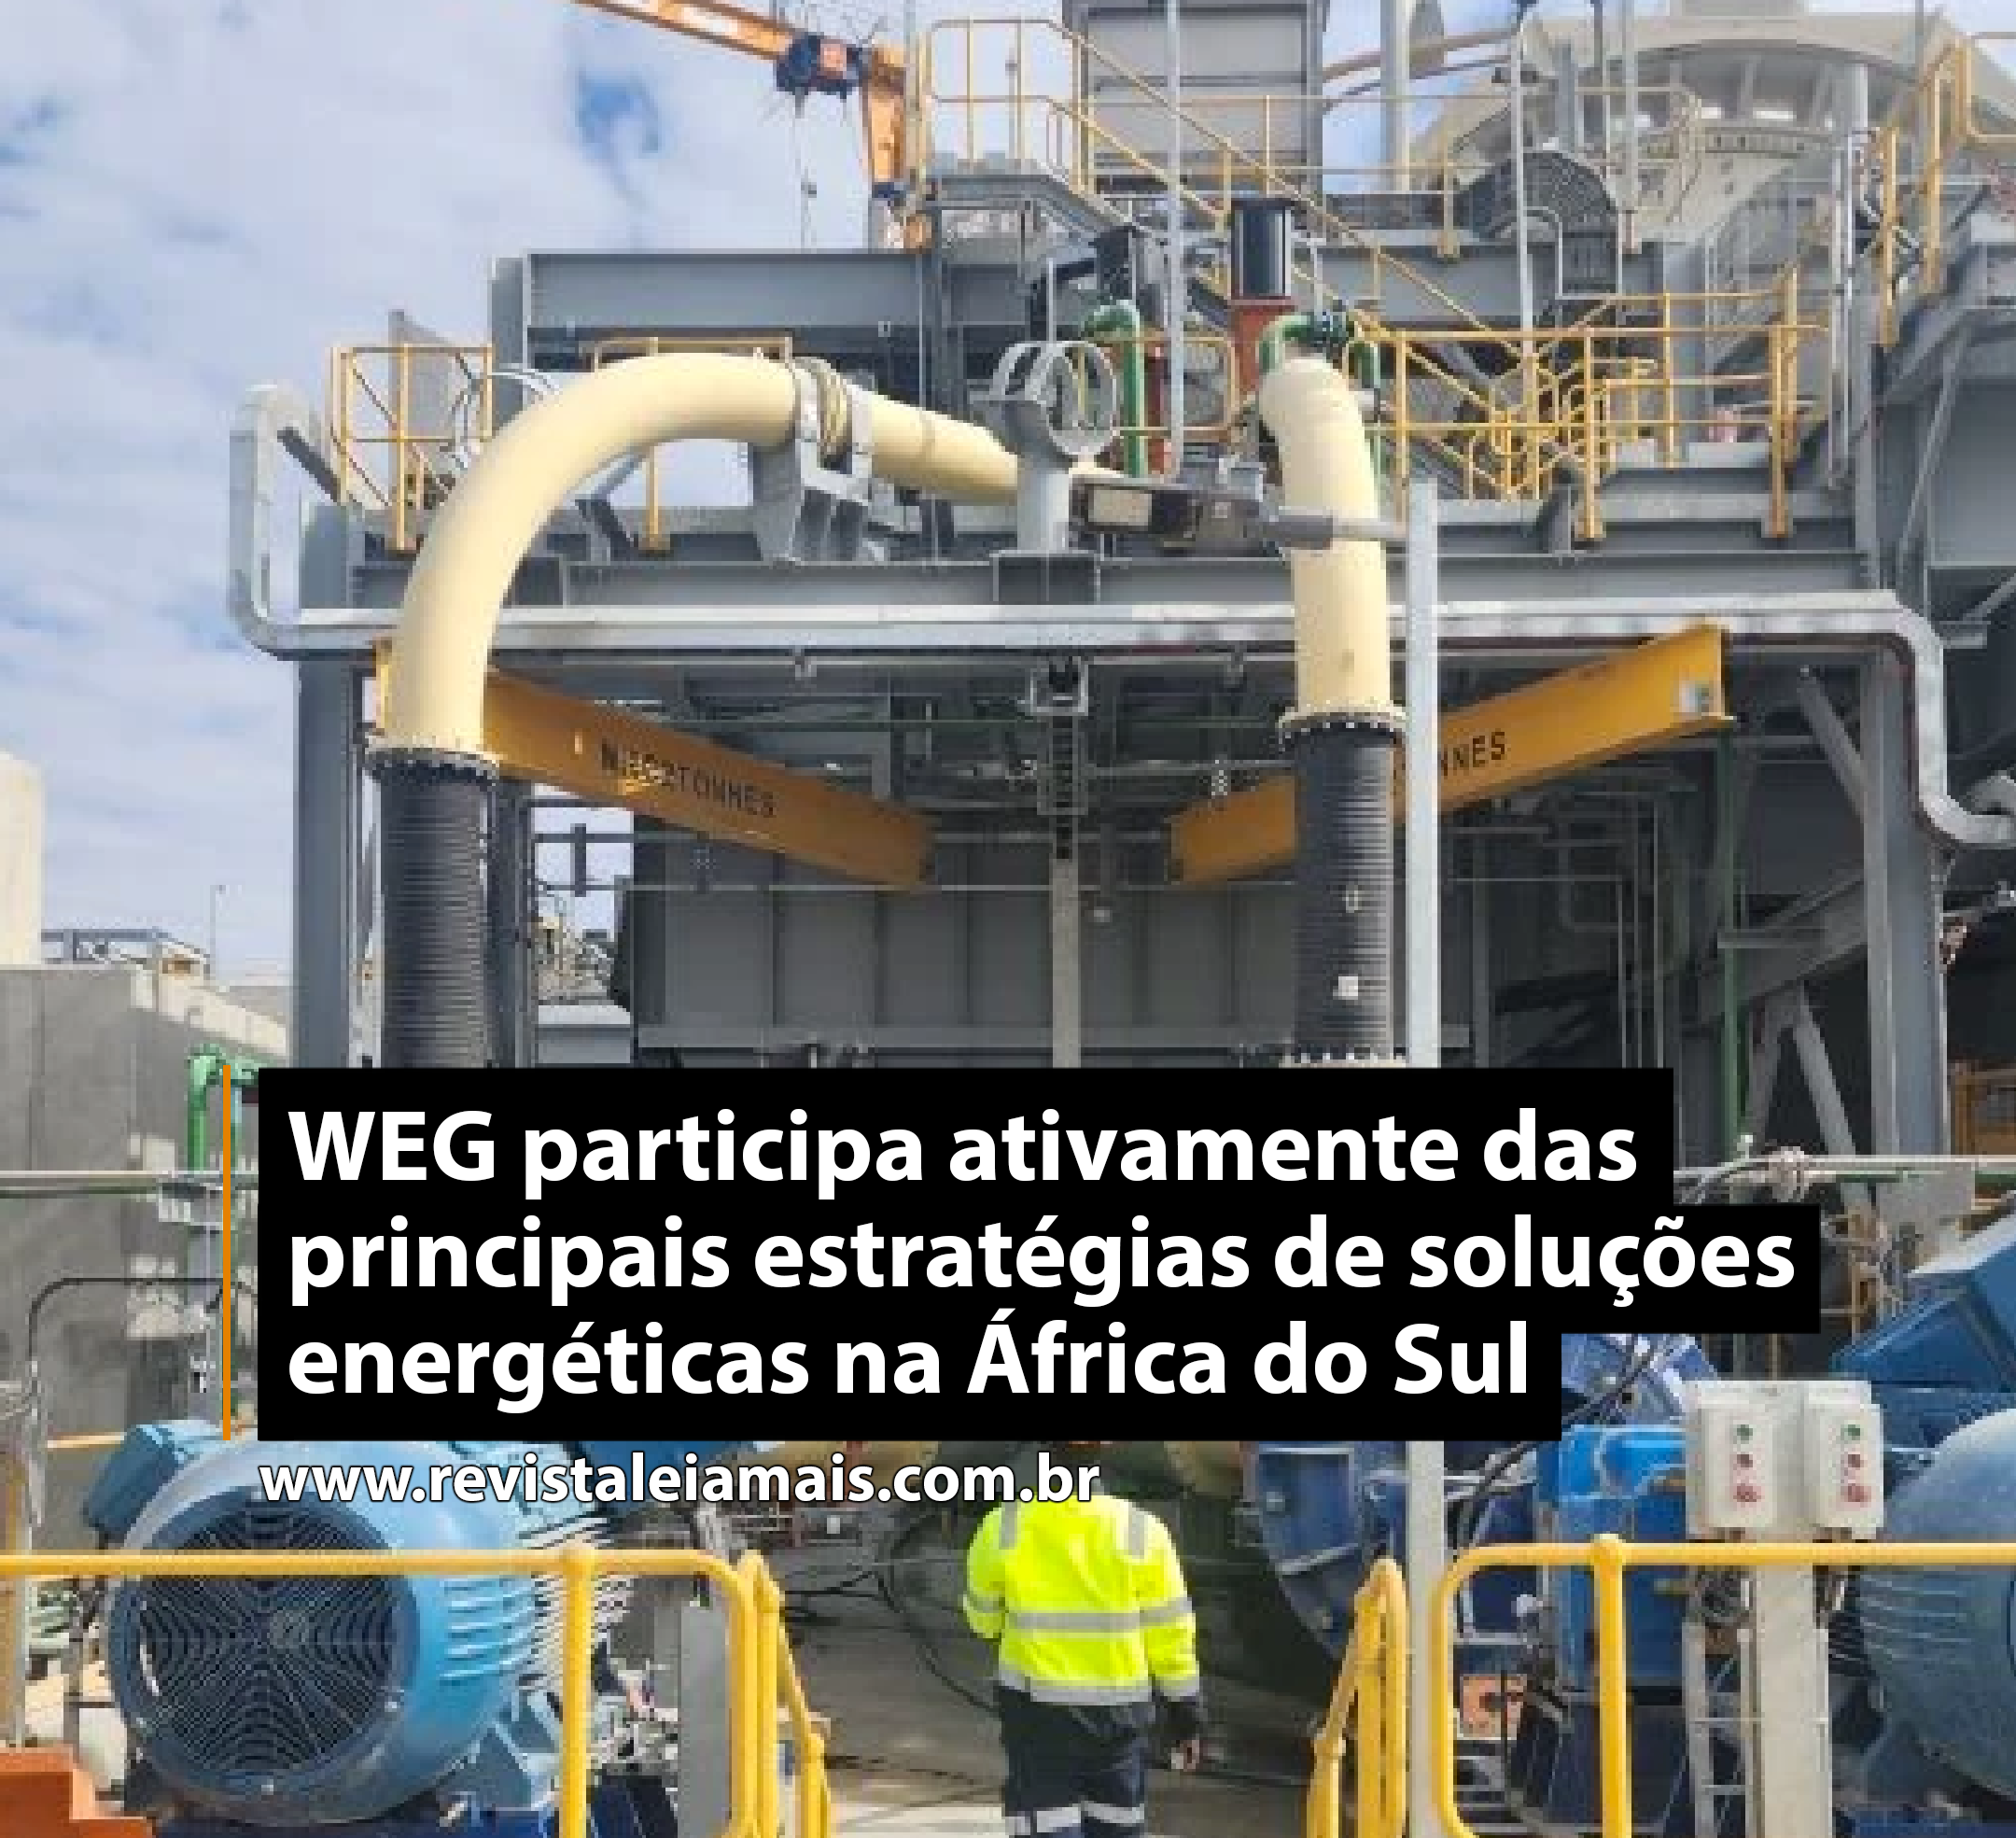 WEG participa ativamente das principais estratégias de soluções energéticas na África do Sul